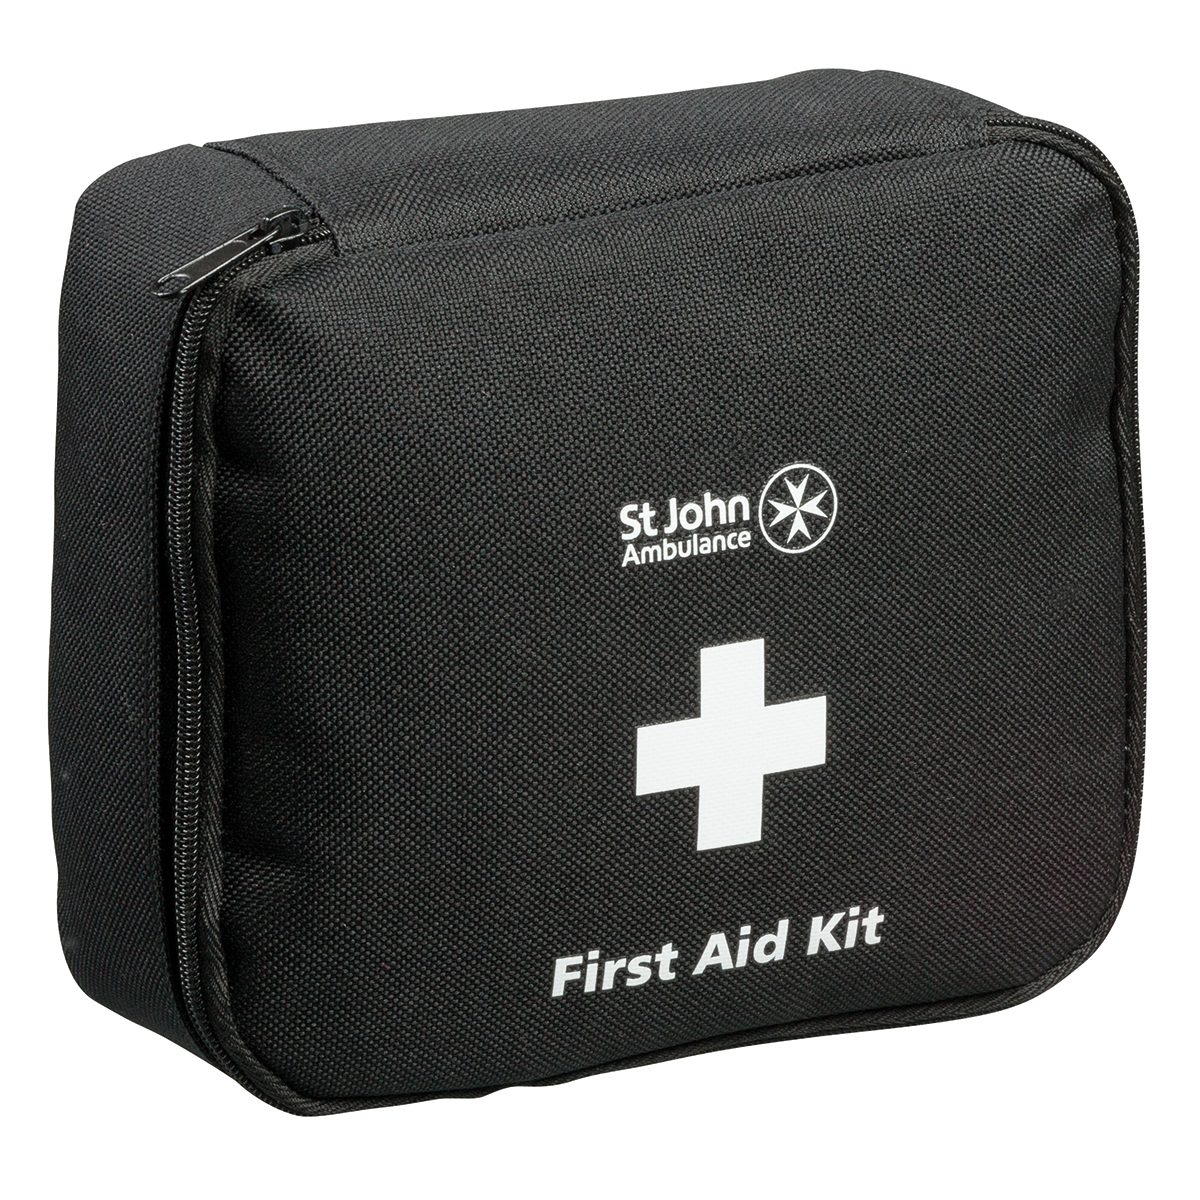 Medium Motor Vehicle First Aid Kit